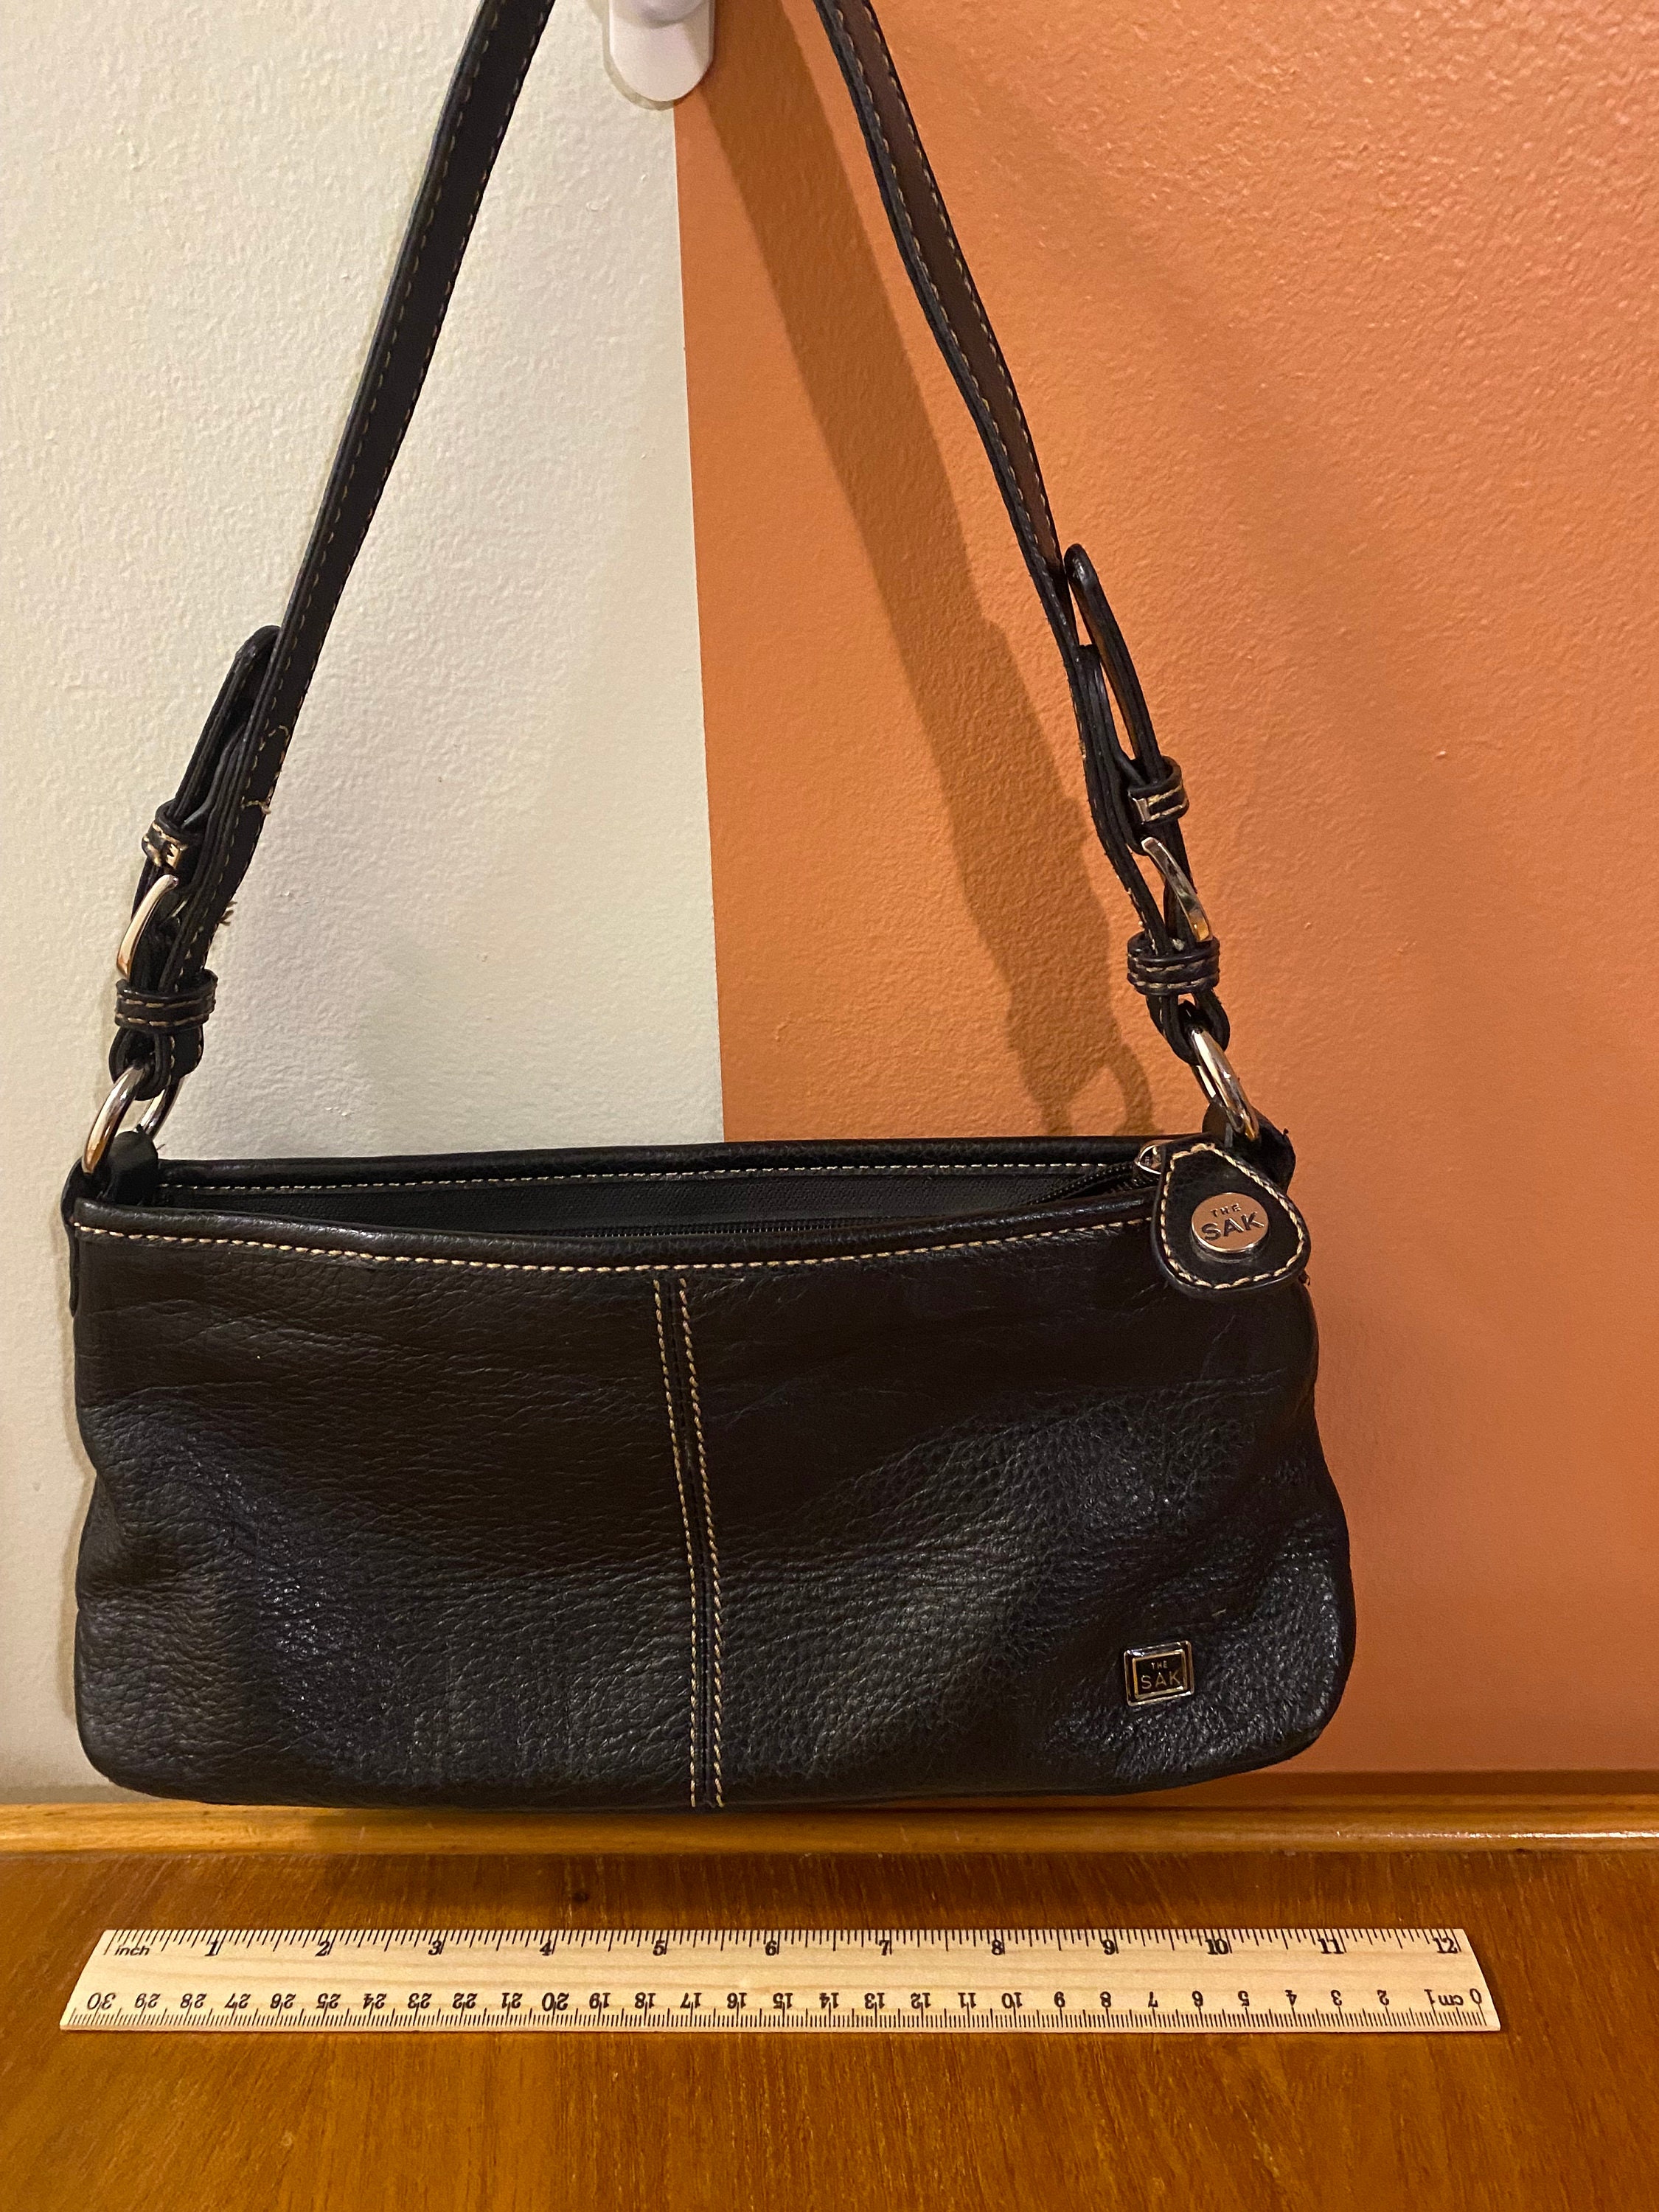 black sak handbag - Gem